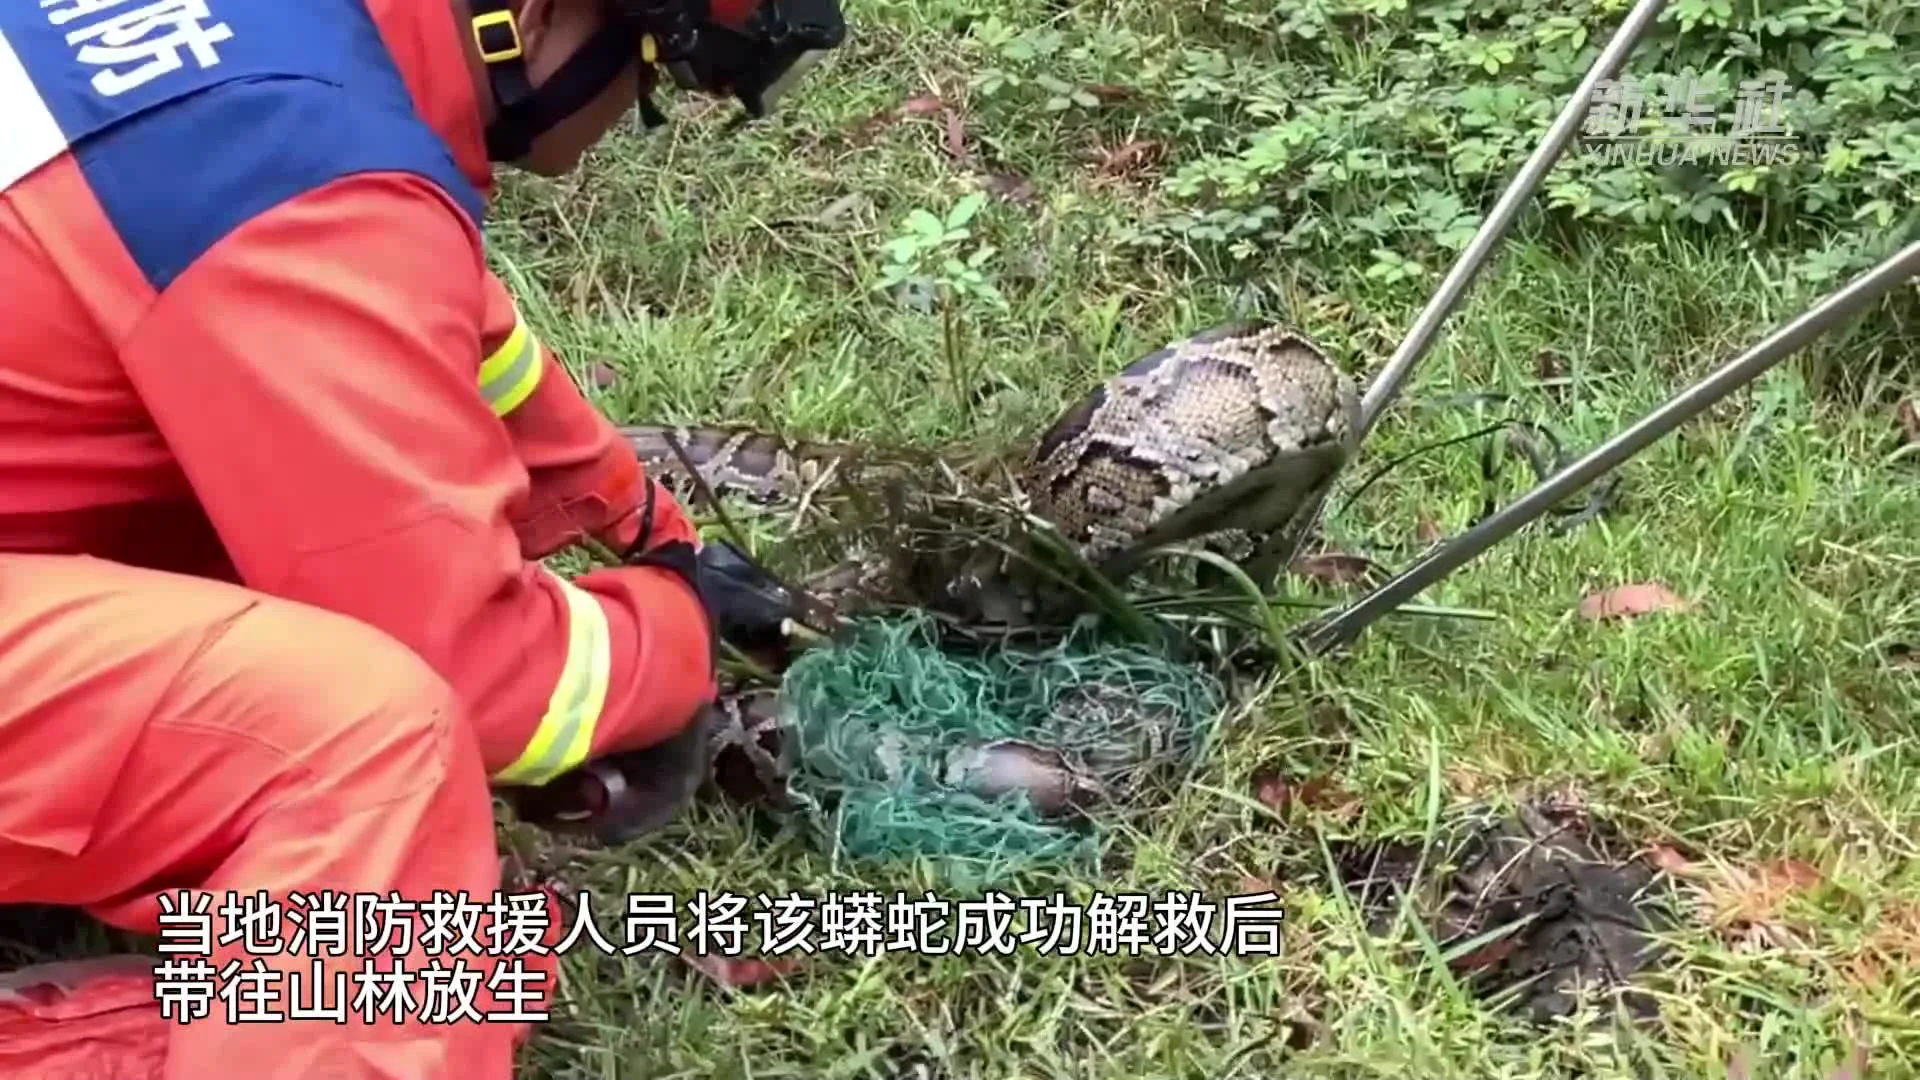 ดับเพลิงจีนช่วยชีวิต 'งูเหลือม' หนัก 30 กิโลฯ ติดอวนดักปลา